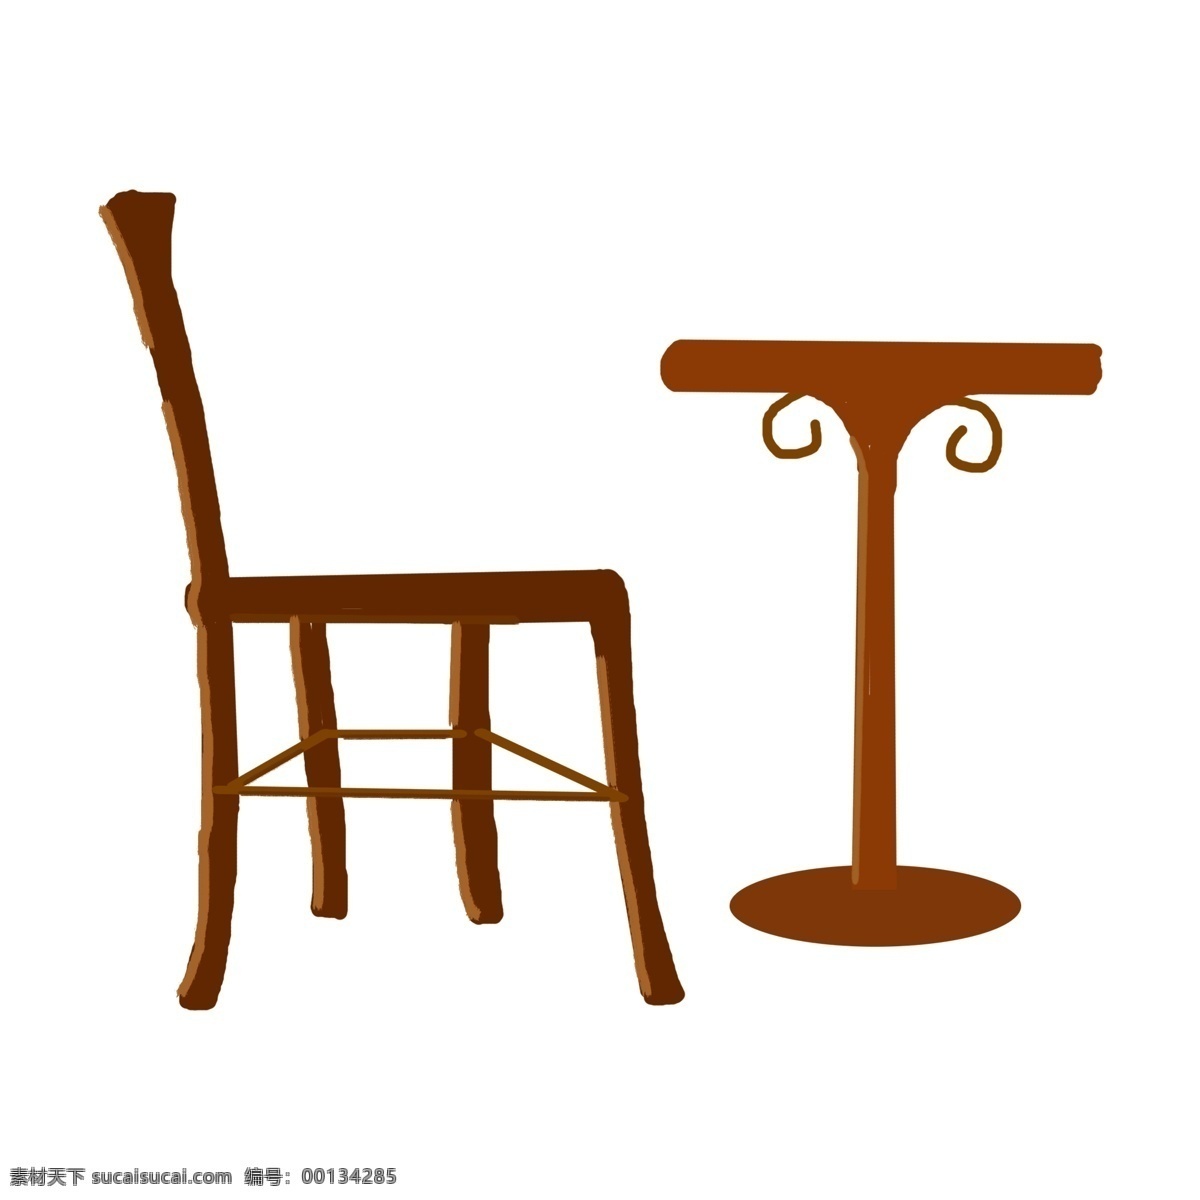 唯美 手绘 桌椅 元素 png元素 免抠元素 木质 家具 透明素材 装饰元素